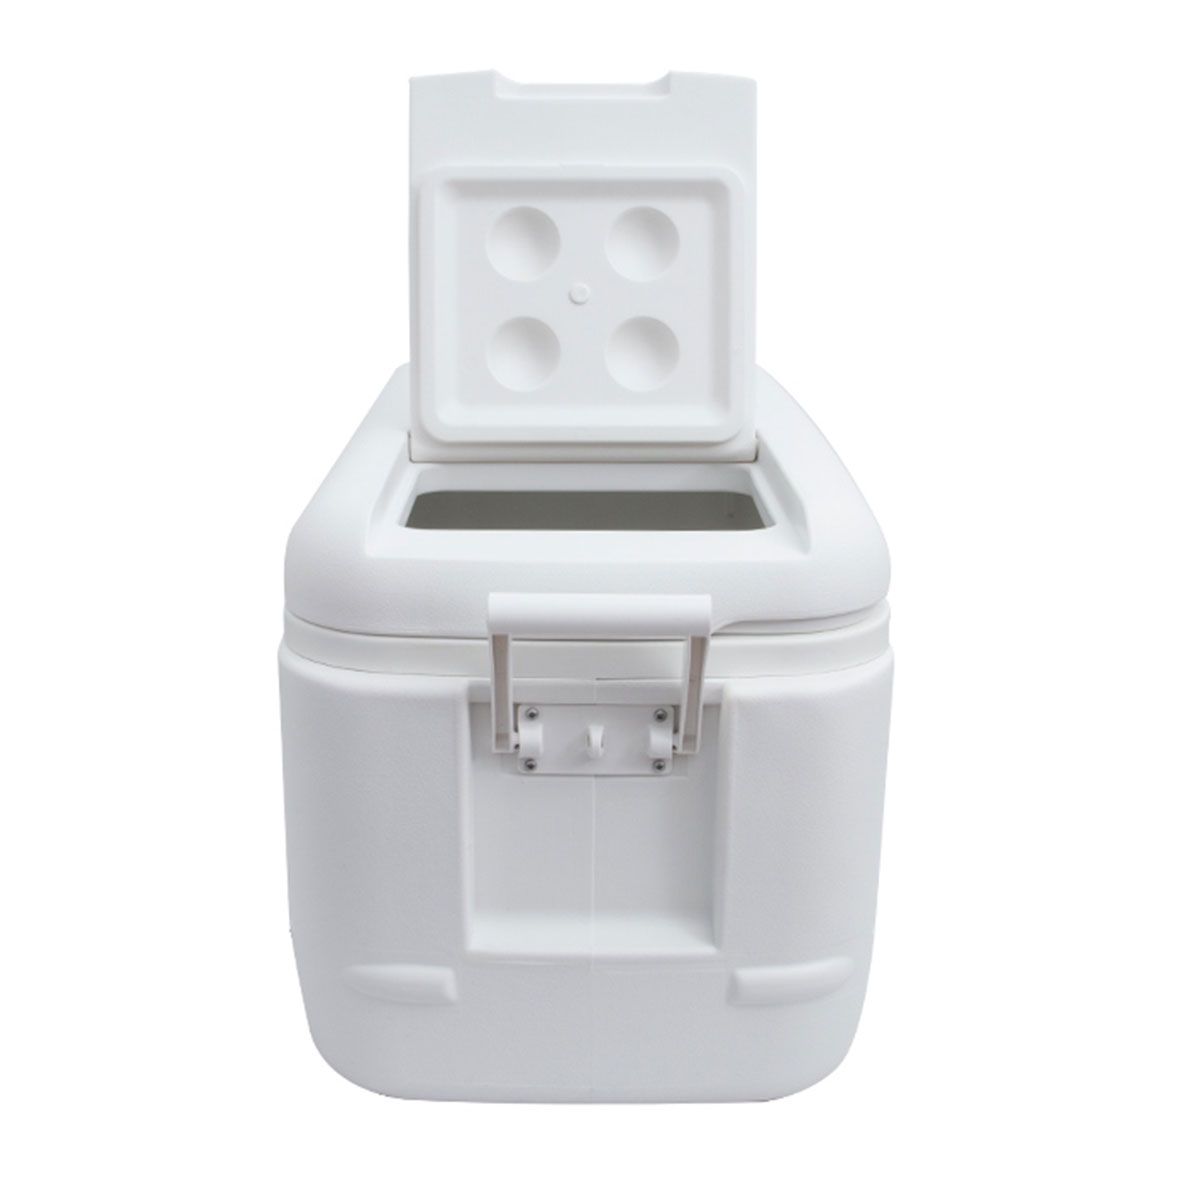 Caixa Térmica Cooler Nautika 95 L Igloo Quick 100QT Branco